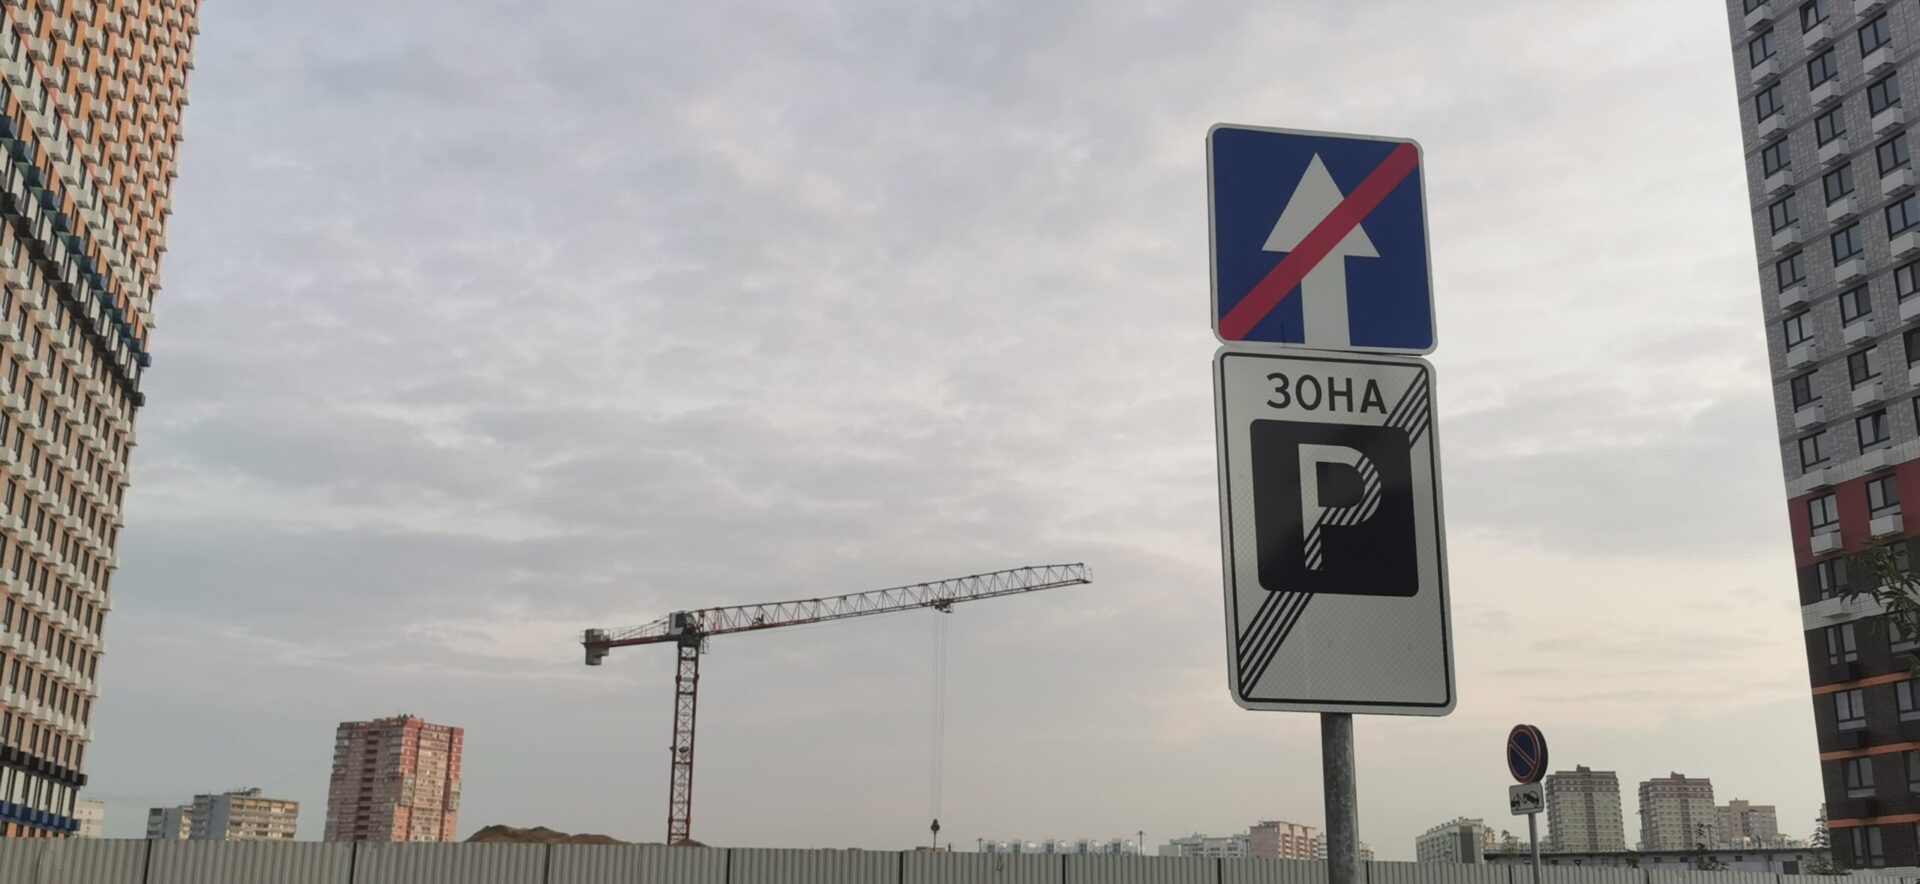 Портал Car.ru объяснил, где лучше покупать подержанный автомобиль: в Москве или в регионе